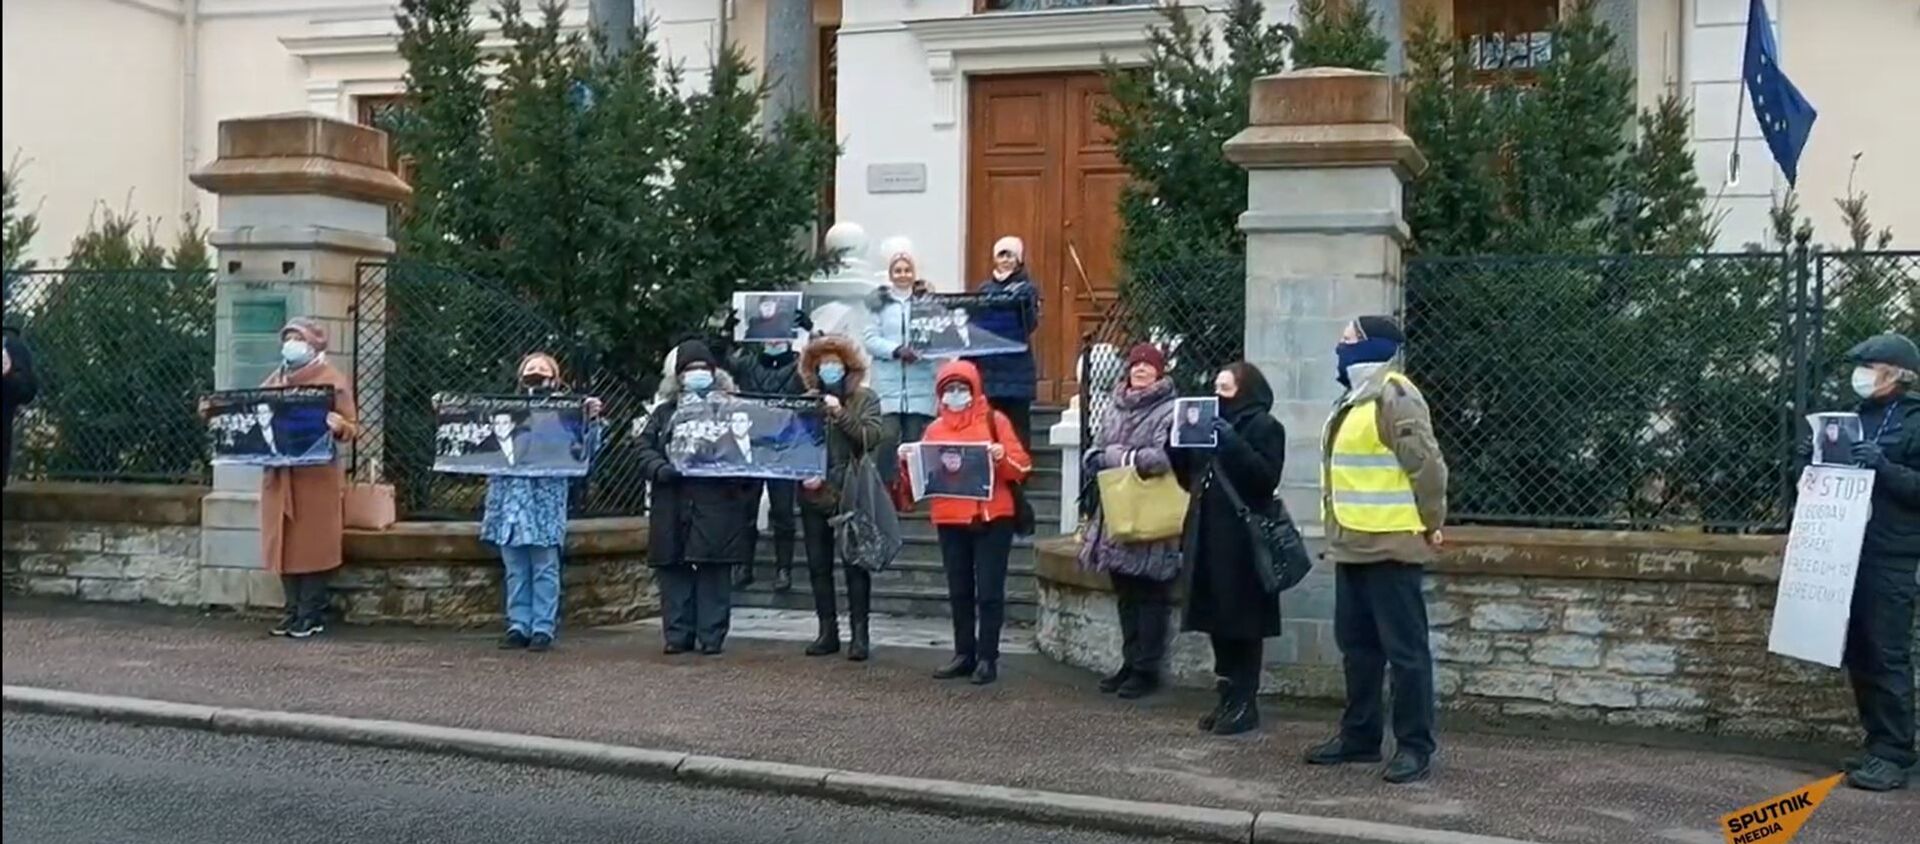 С момента ареста ничего не известно: таллинцы вышли на пикет в поддержку правозащитника Середенко - Sputnik Латвия, 1920, 06.04.2021